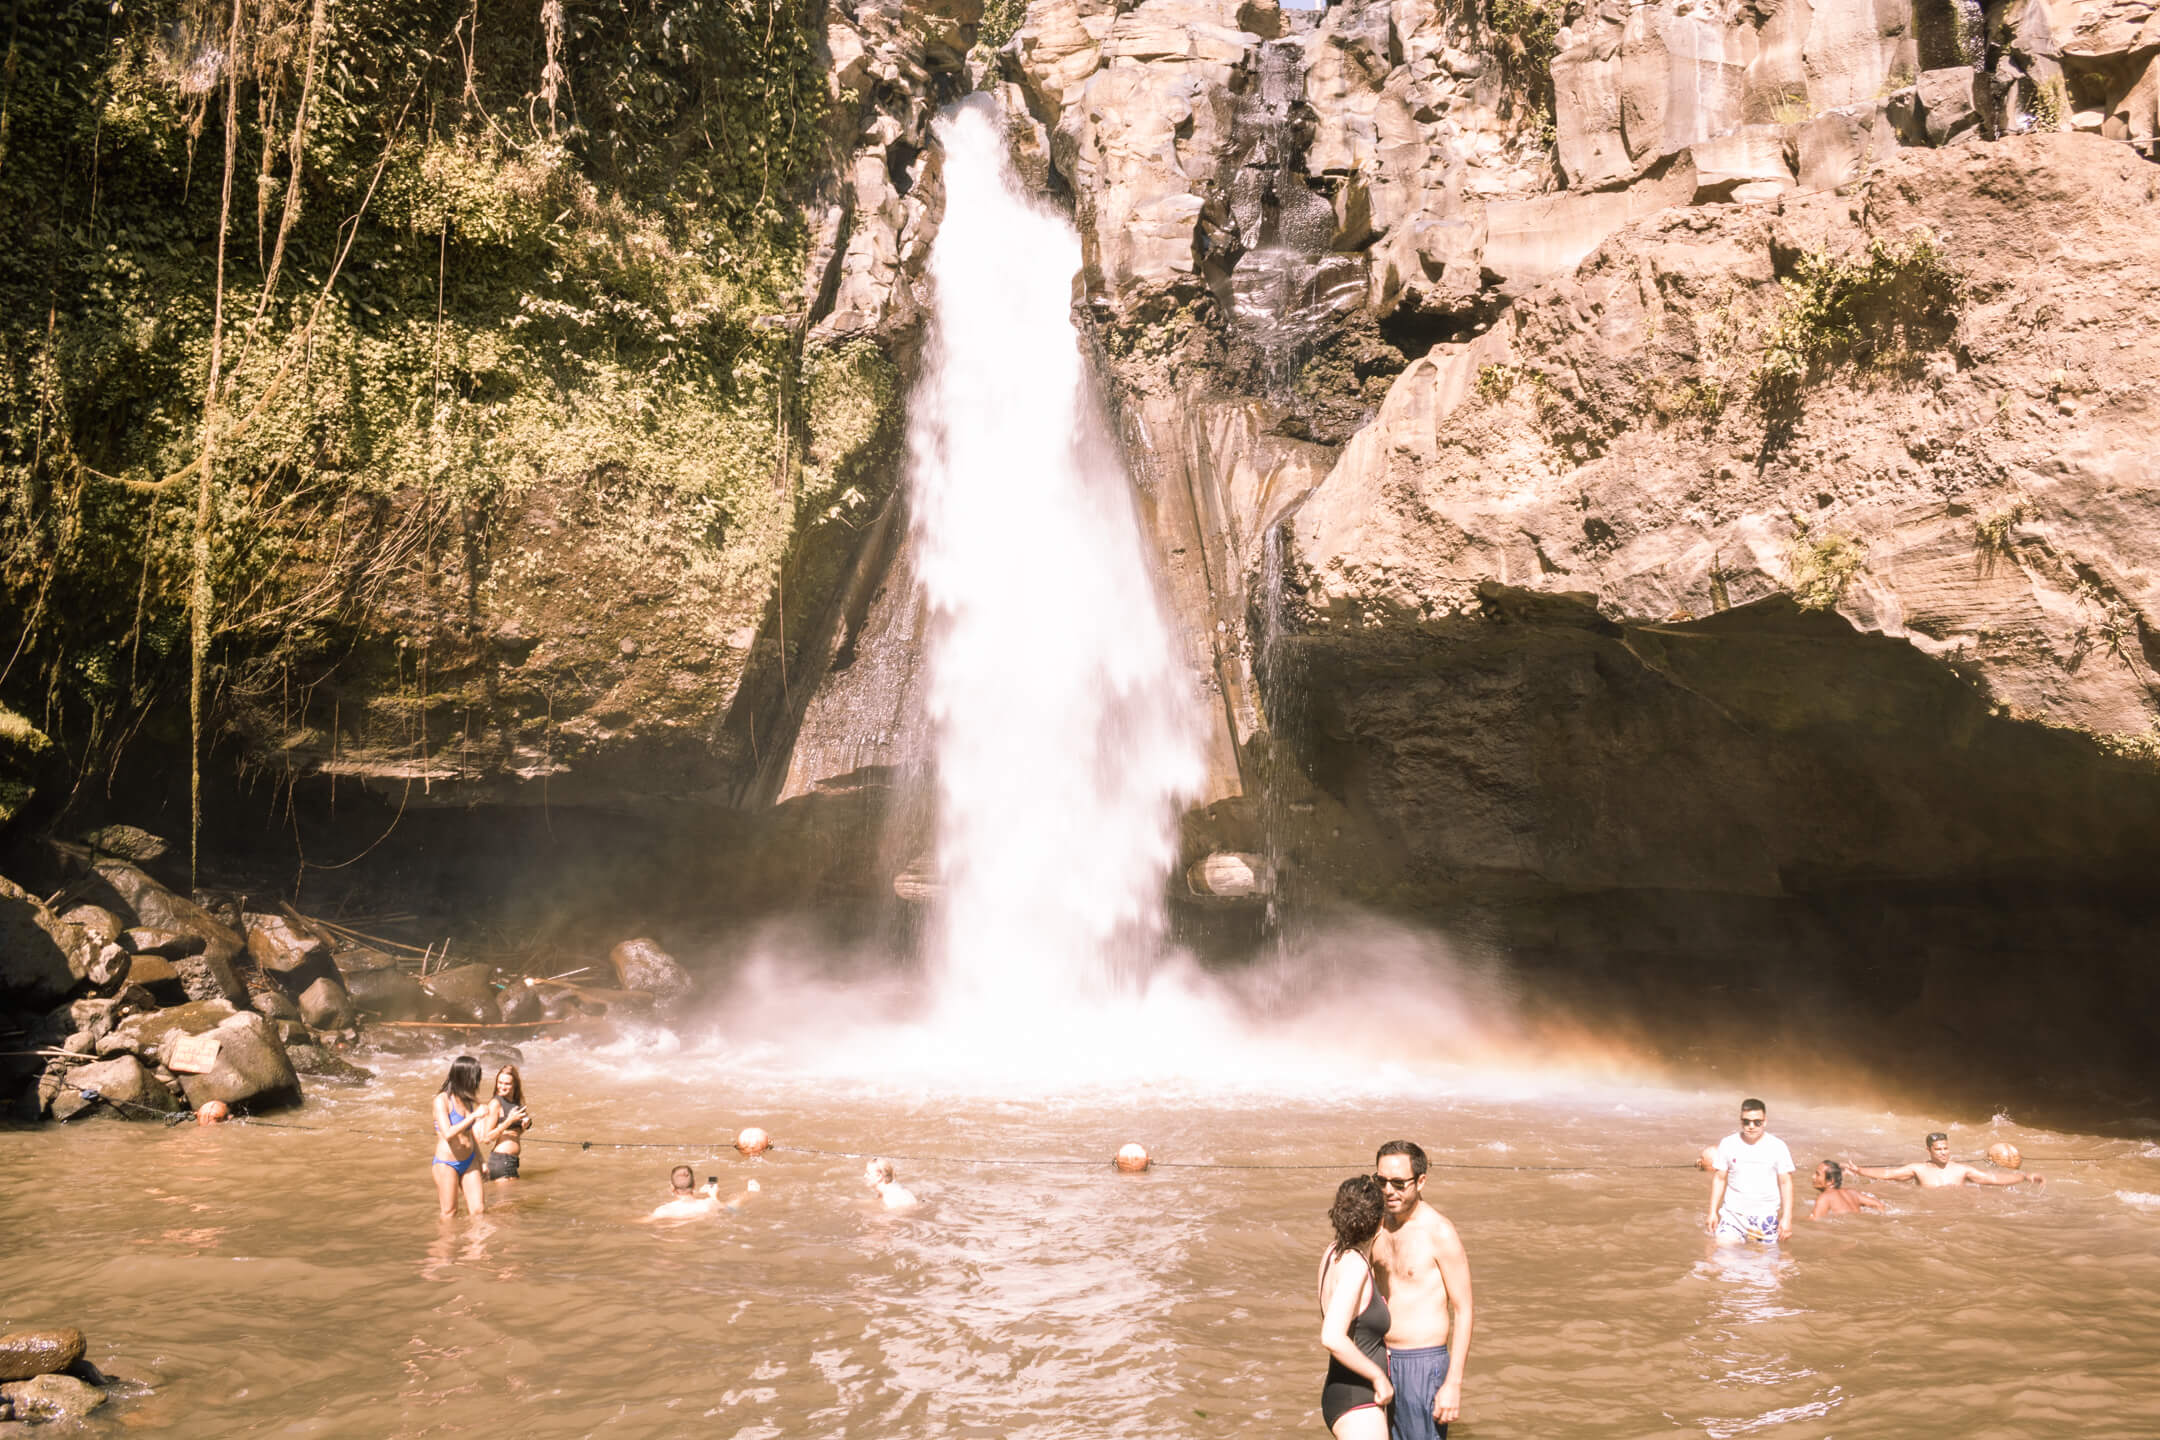 Tegenungan Waterfall in Ubud, Bali